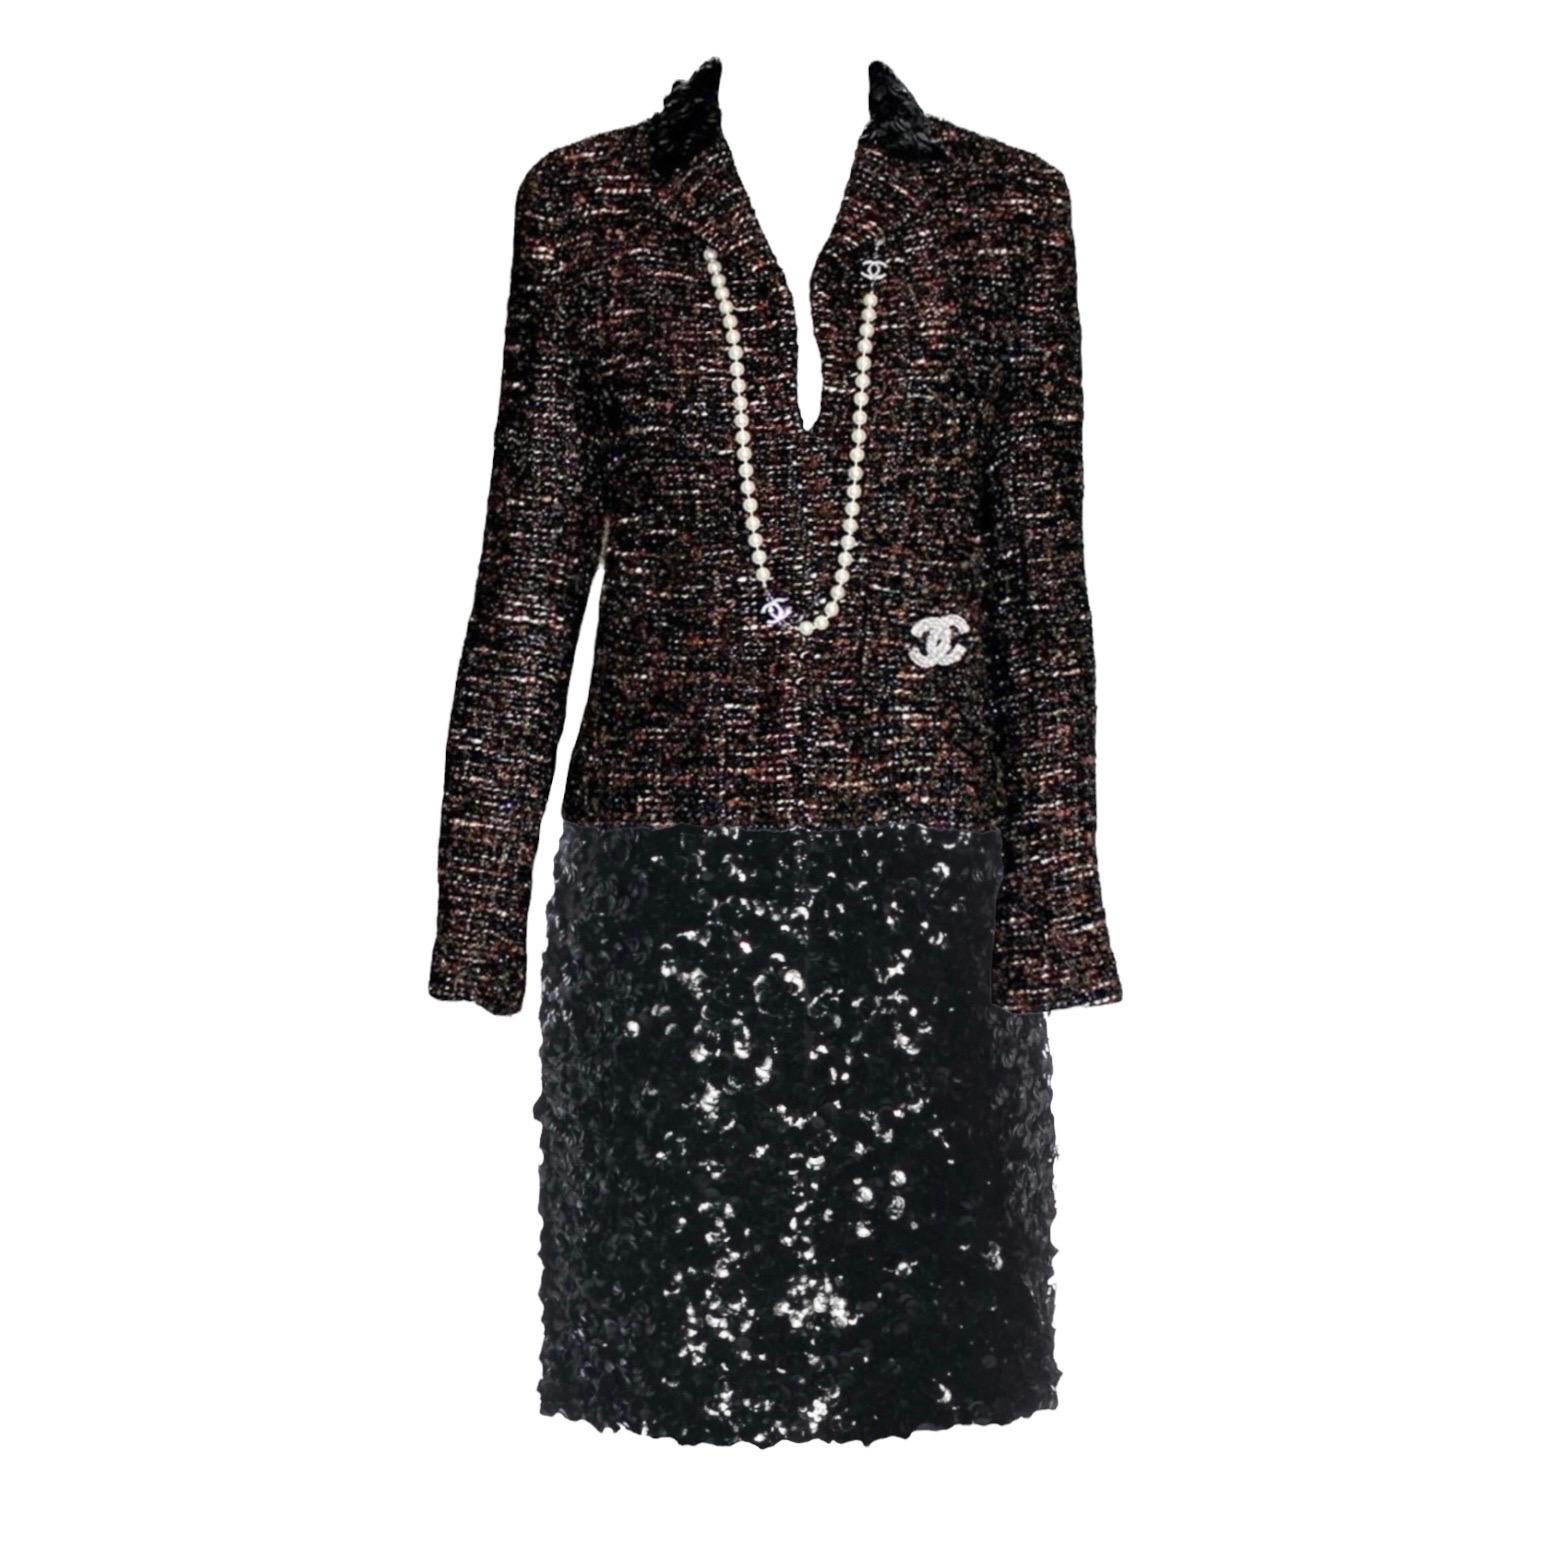 UNWORN Chanel Metallic Fantasy Tweed Sequin Trim Jacket Blazer Skirt Suit 38-40 For Sale